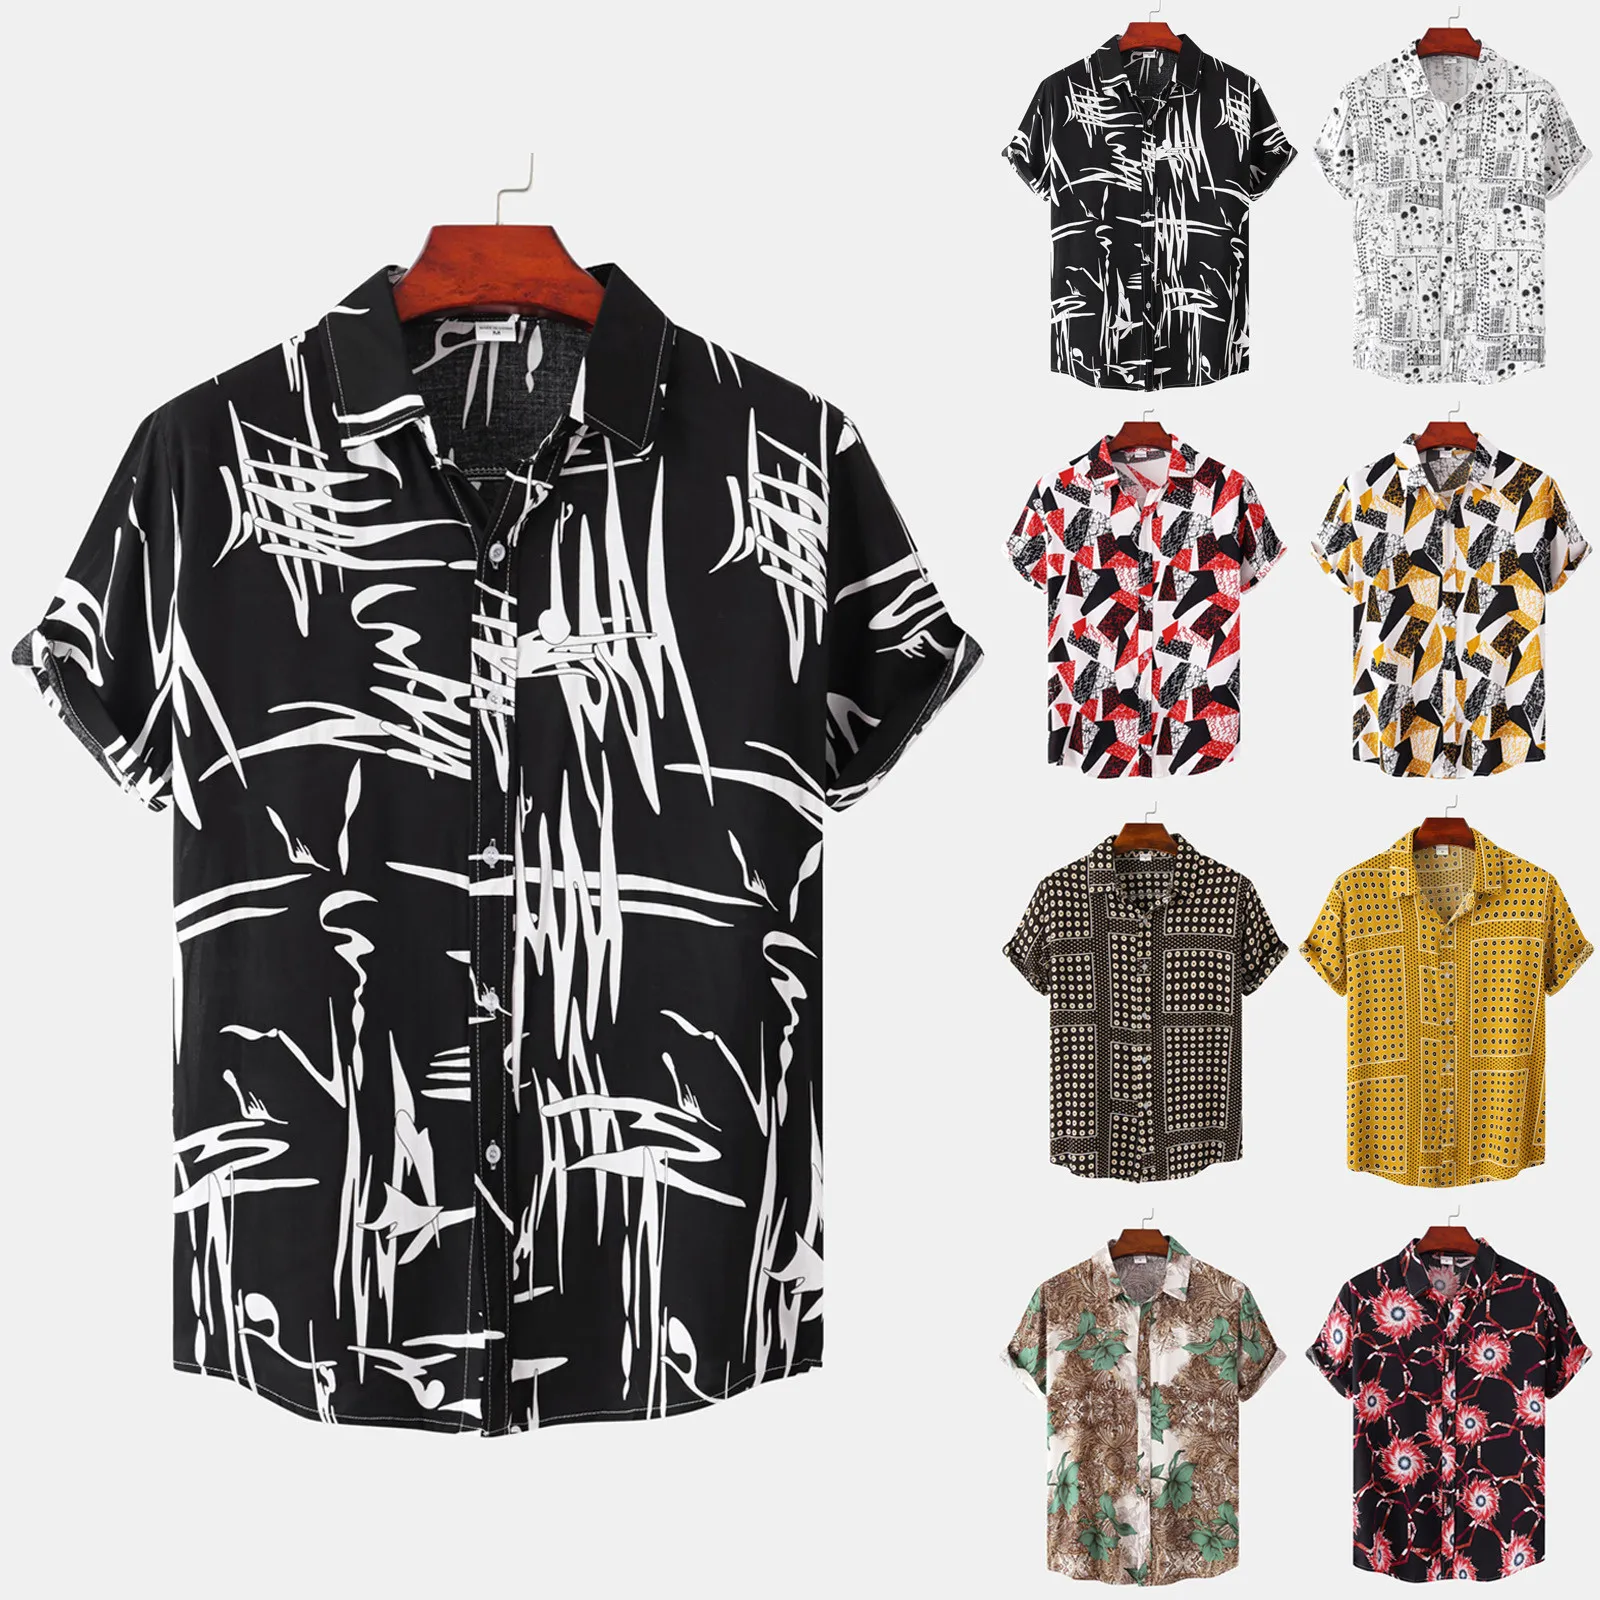 

Summer Men's Vacation Shirts Casual Hawaiian Style Short Sleeve Printed Breathable Comfortable Beach Shirt Camisa Masculina#g3